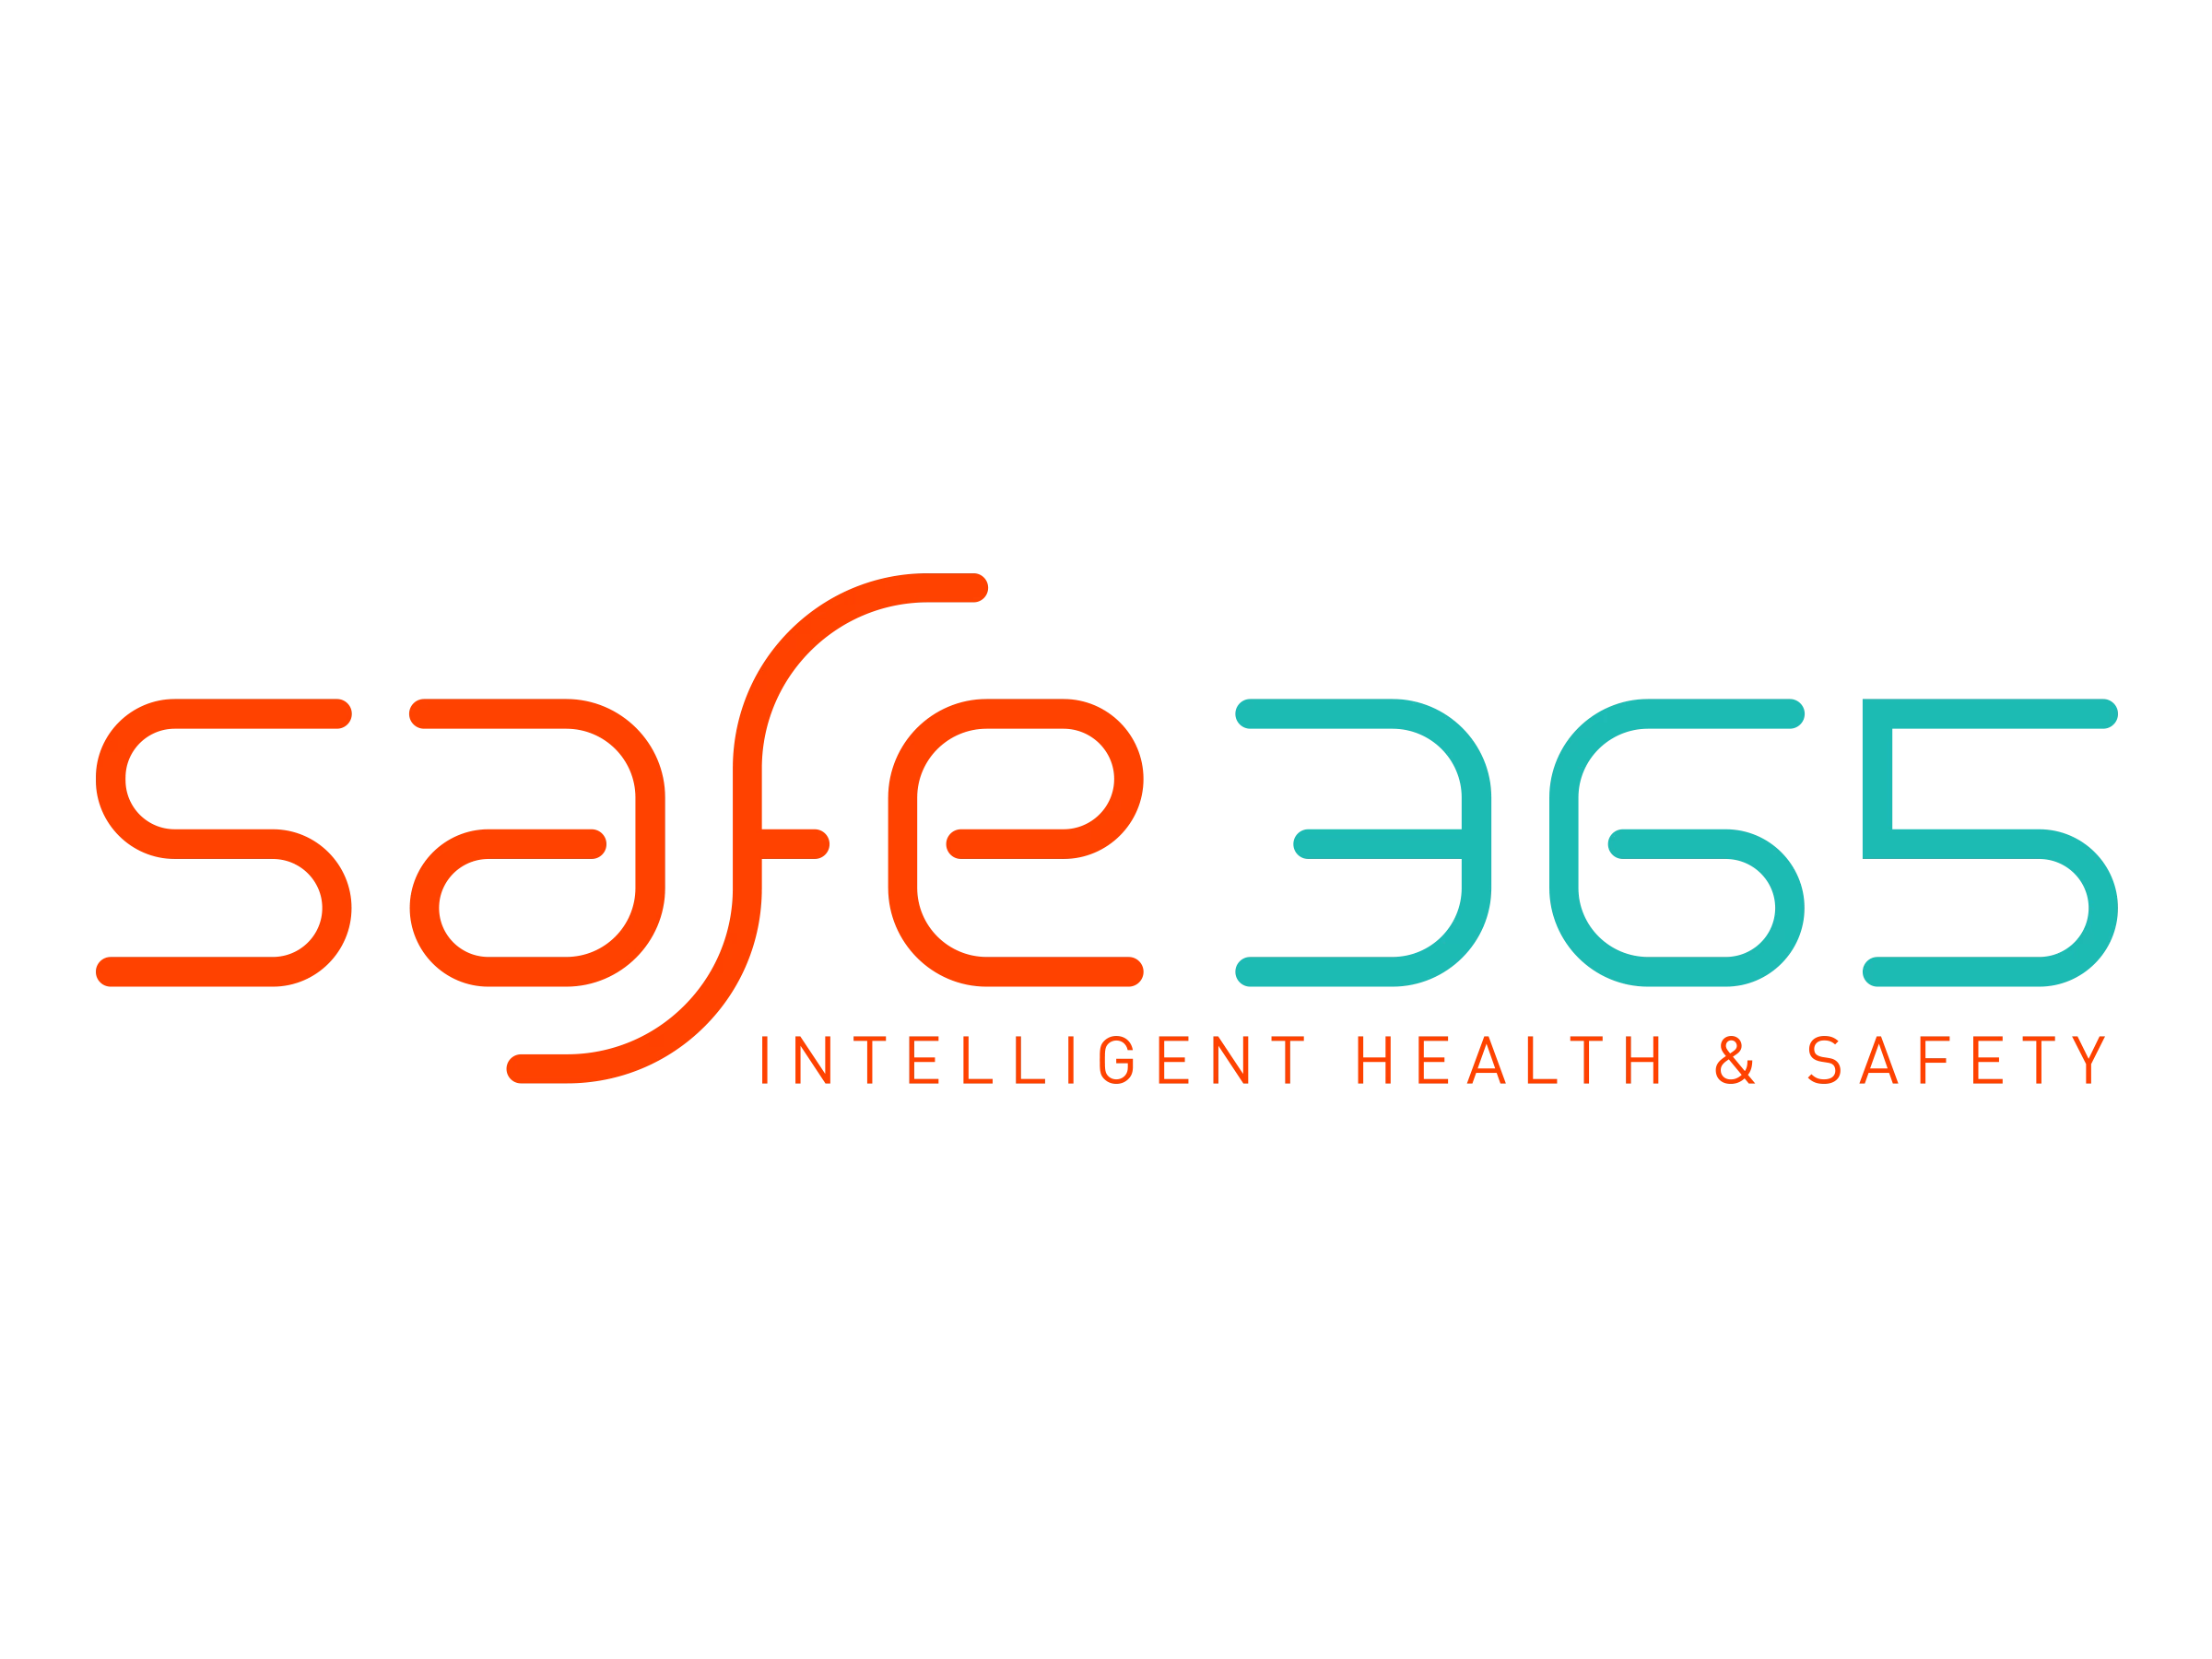 Our Technology Partner Safe365